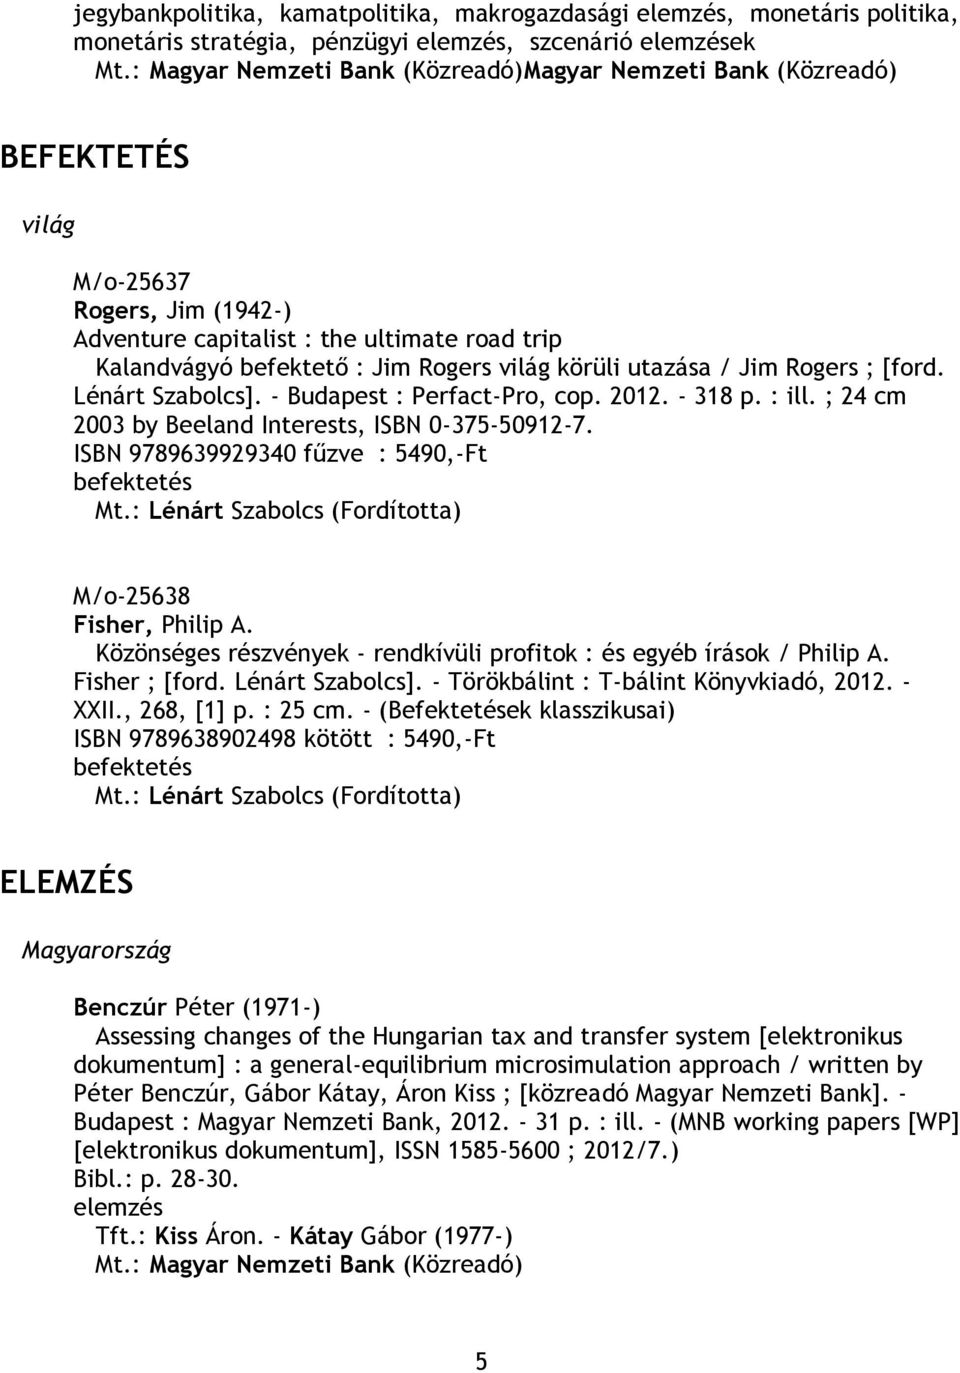 körüli utazása / Jim Rogers ; [ford. Lénárt Szabolcs]. - Budapest : Perfact-Pro, cop. 2012. - 318 p. : ill. ; 24 cm 2003 by Beeland Interests, ISBN 0-375-50912-7.